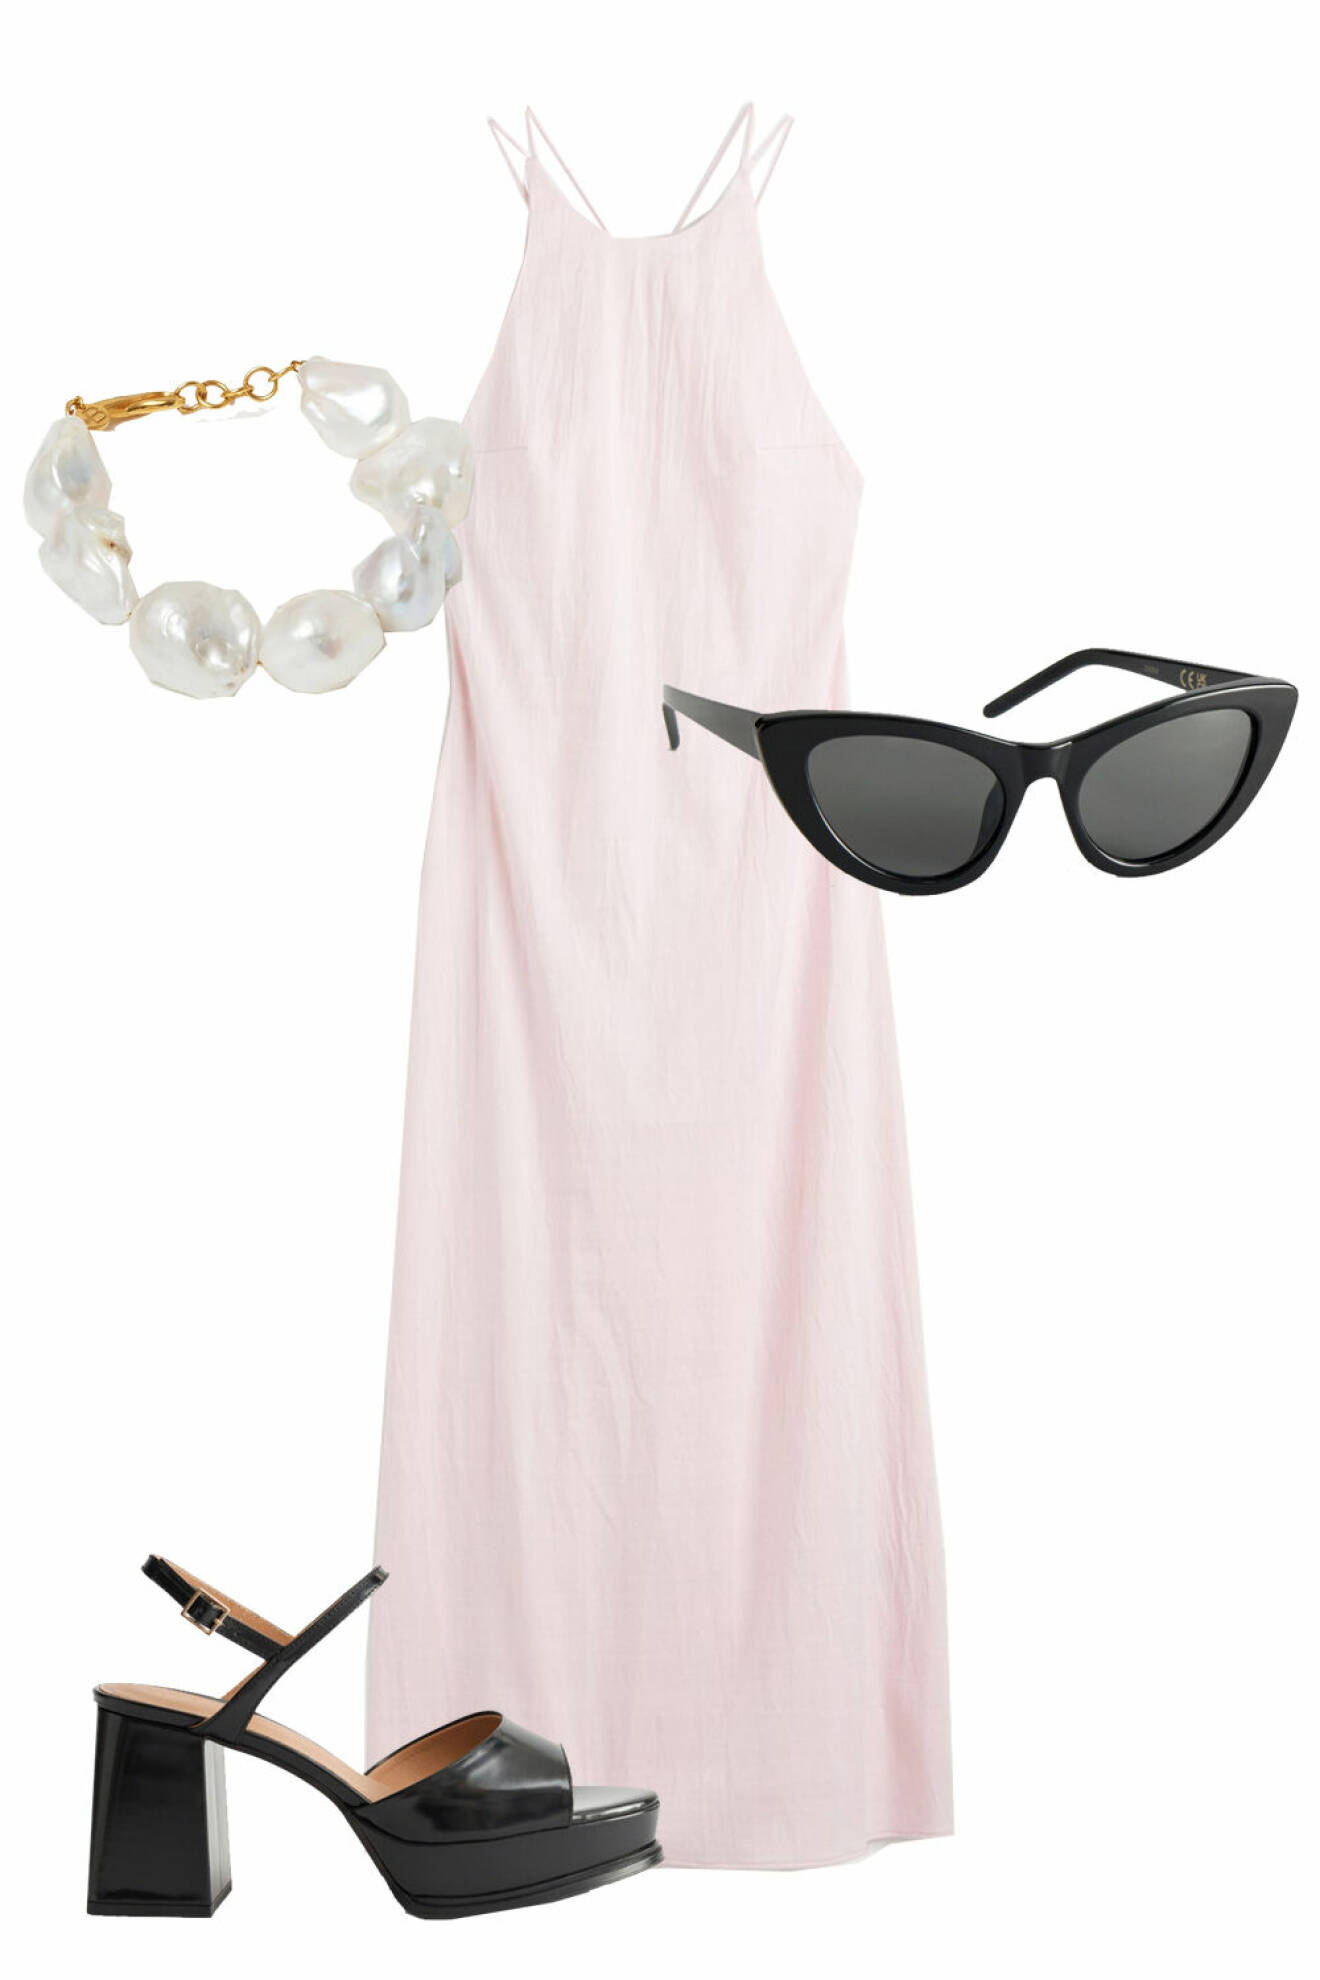 snygg outfit bröllop: ljusrosa klänning, svarta cateye-solglasögon, svarta platåskor och pärlarmband